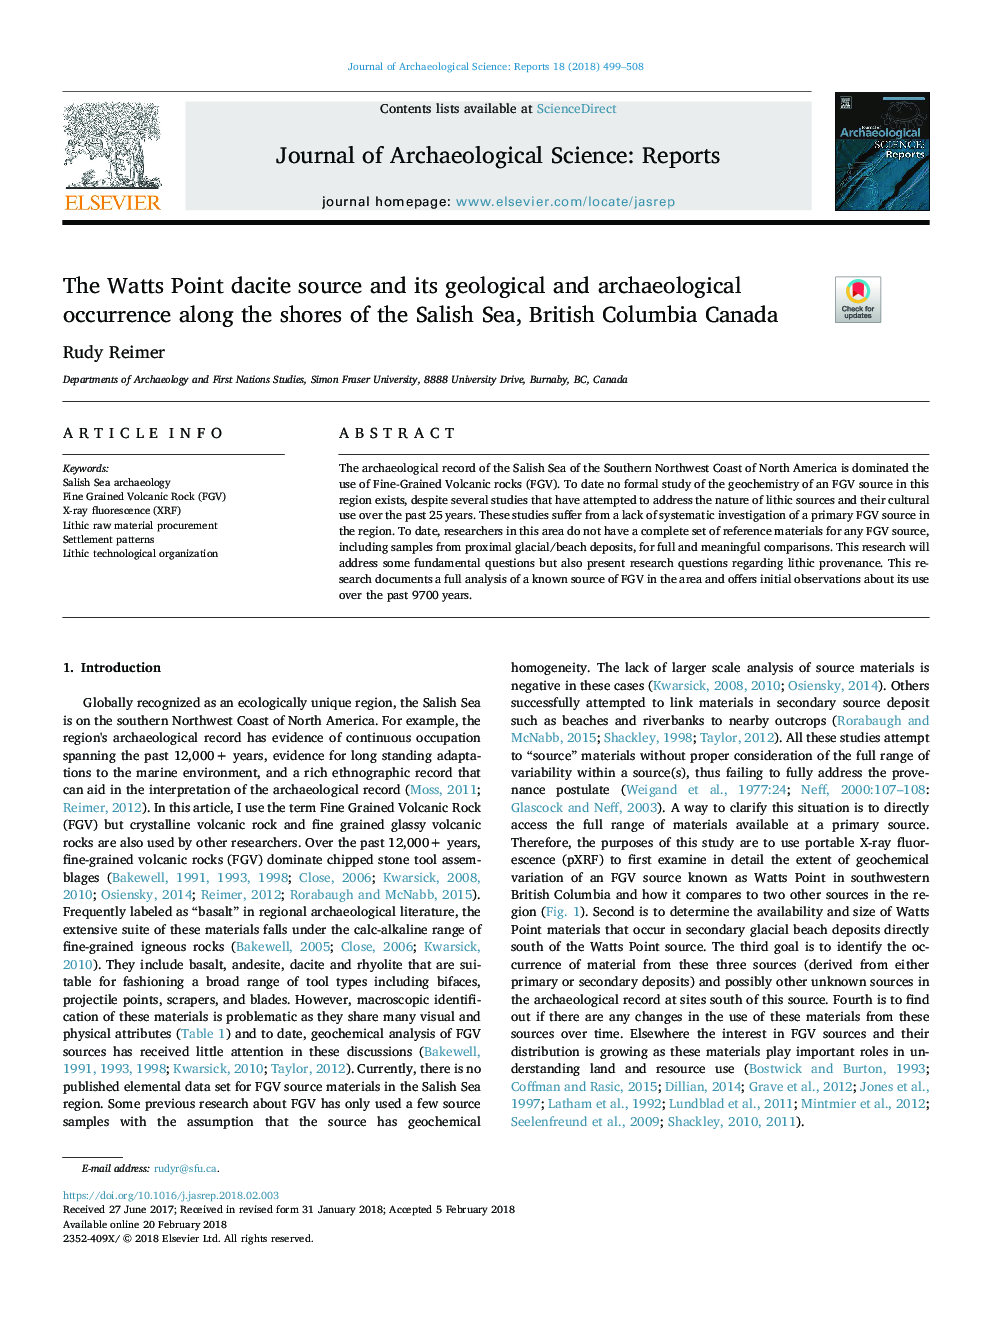 منبع داتیس واتس پوینت و رخساره های زمین شناسی و باستان شناسی آن در امتداد ساحل دریای سلس، بریتیش کلمبیا کانادا 